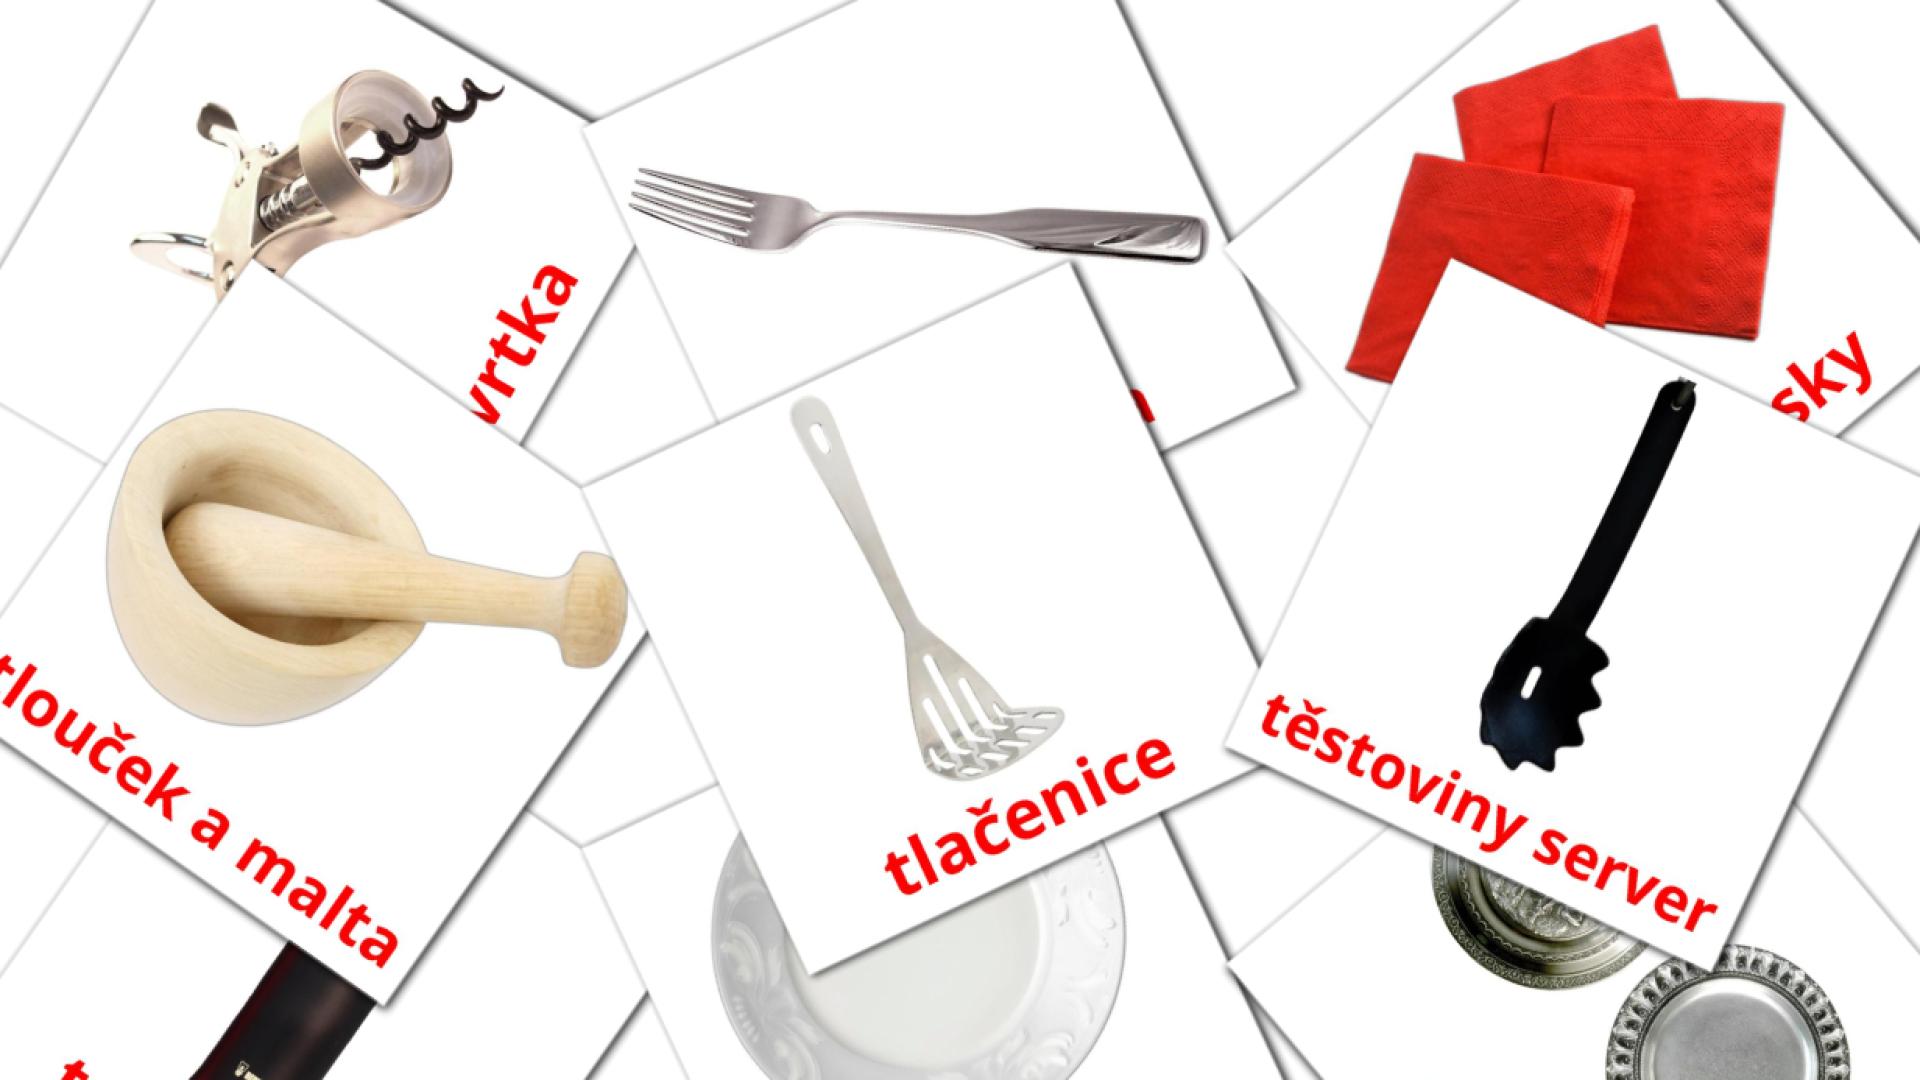 Kuchyně tsjechisch woordenschat flashcards